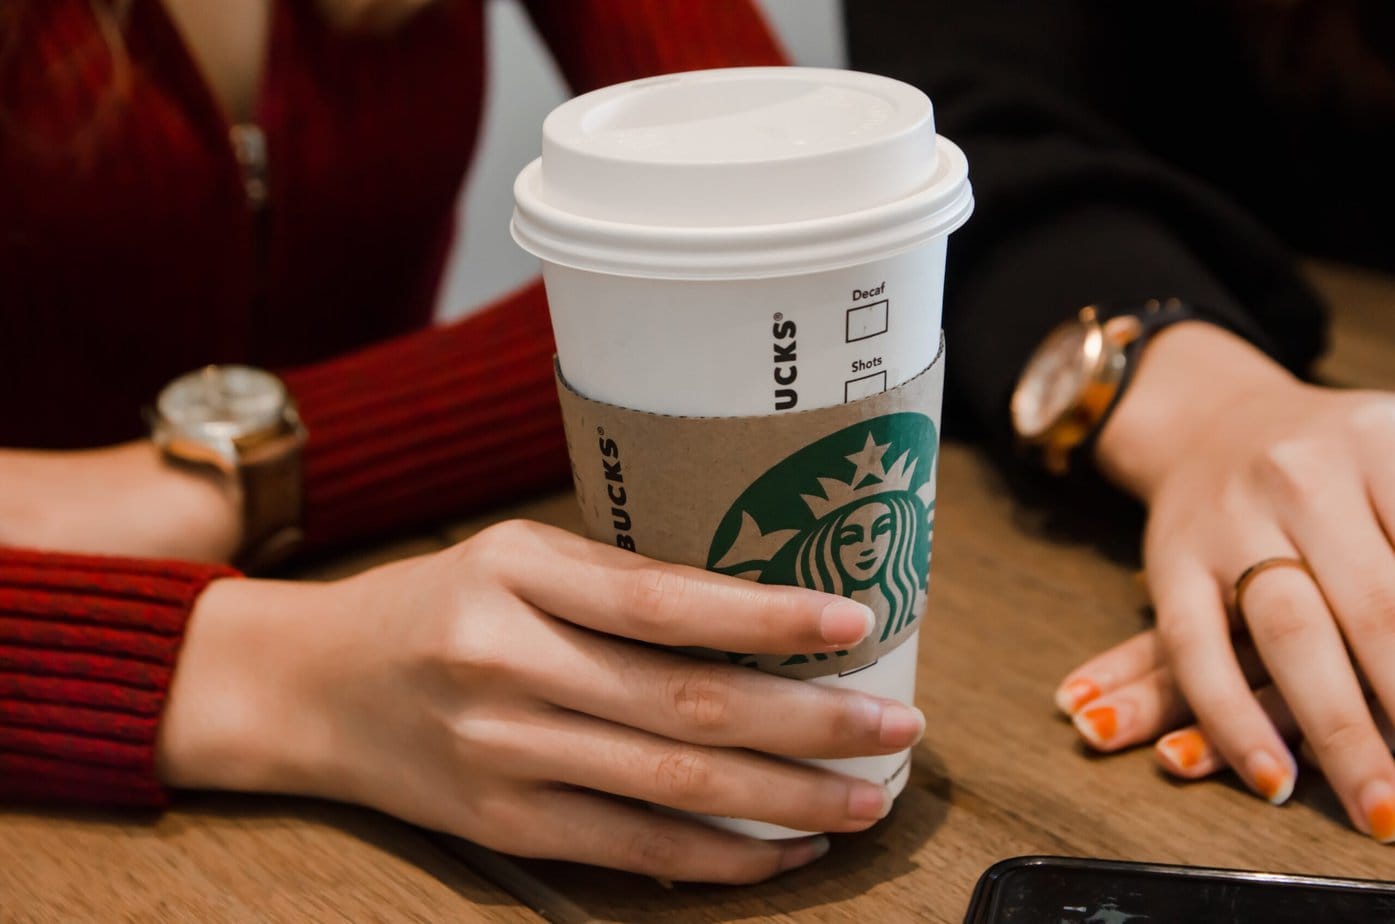 17 bebidas de Starbucks con mayor contenido de cafeína, clasificadas de mayor a menor.